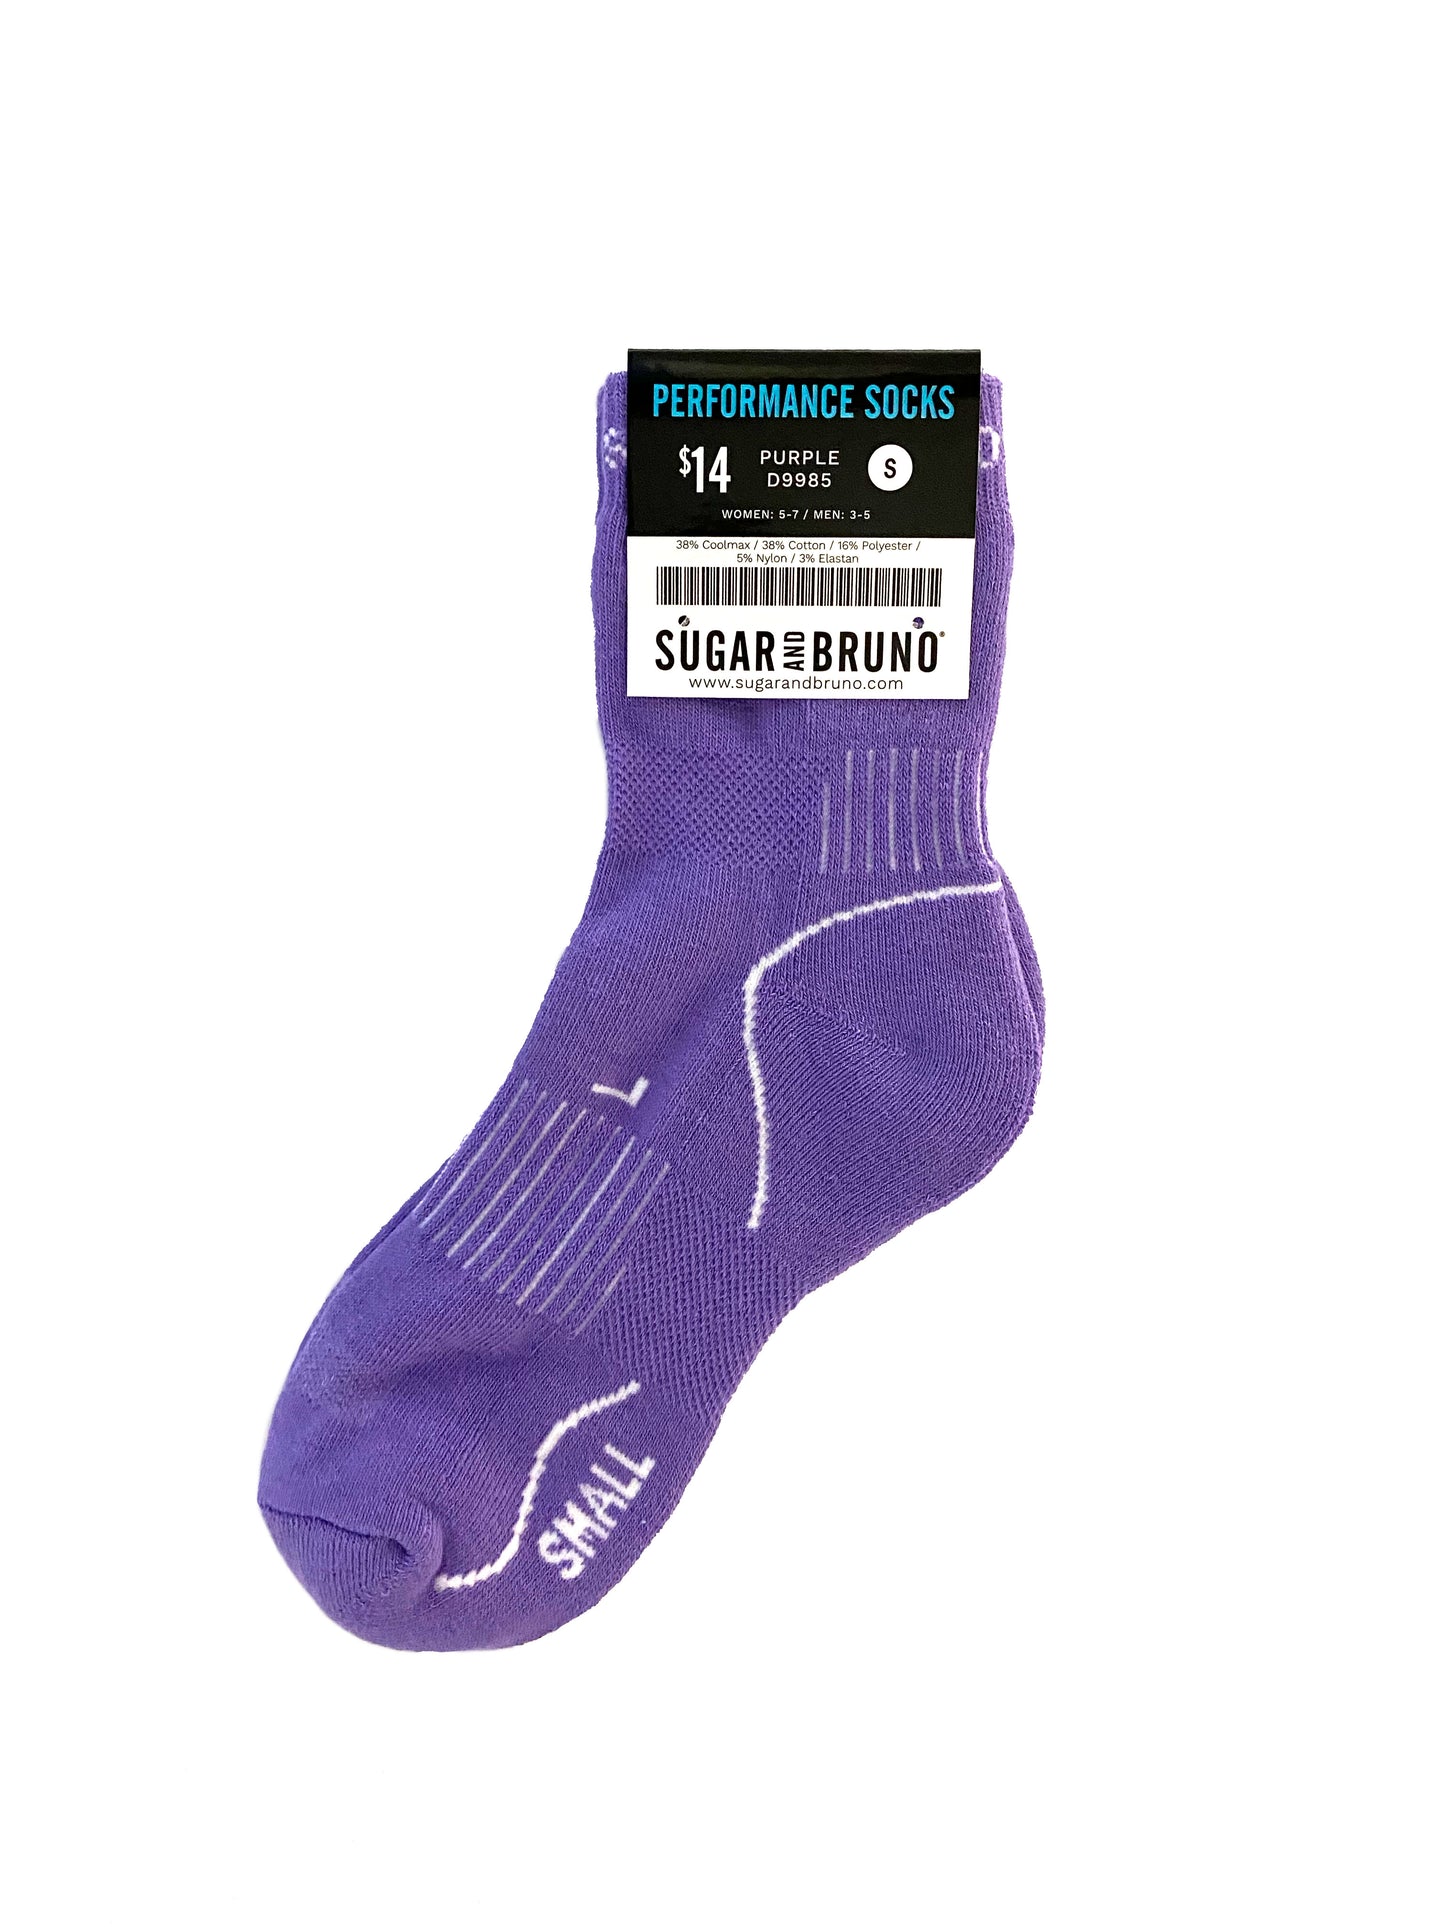 SB Performance Socks, Purple